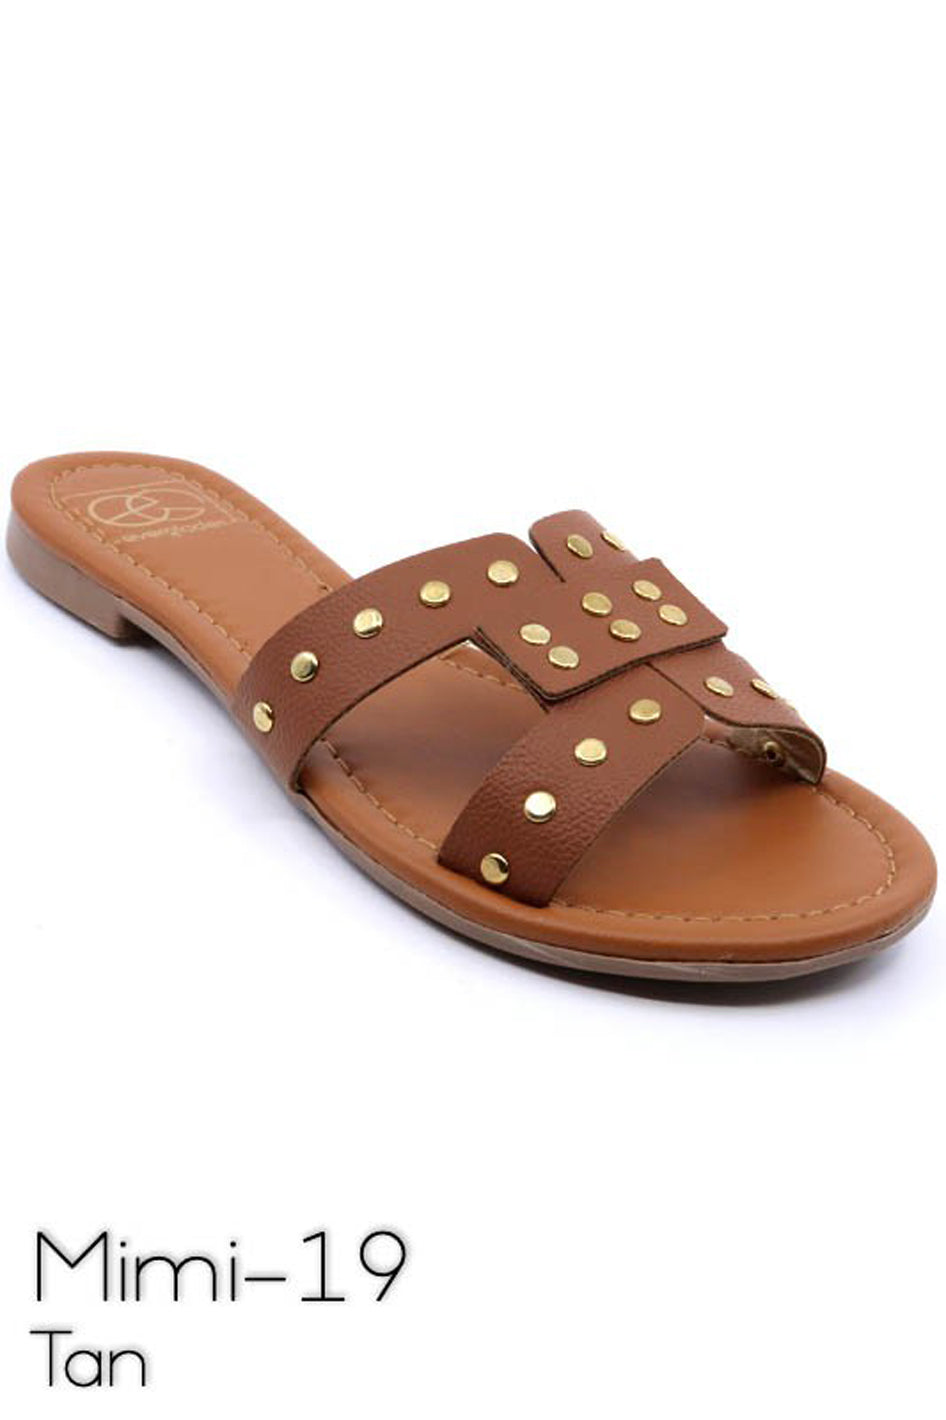 Slide sandal with rivet studs - Azoroh